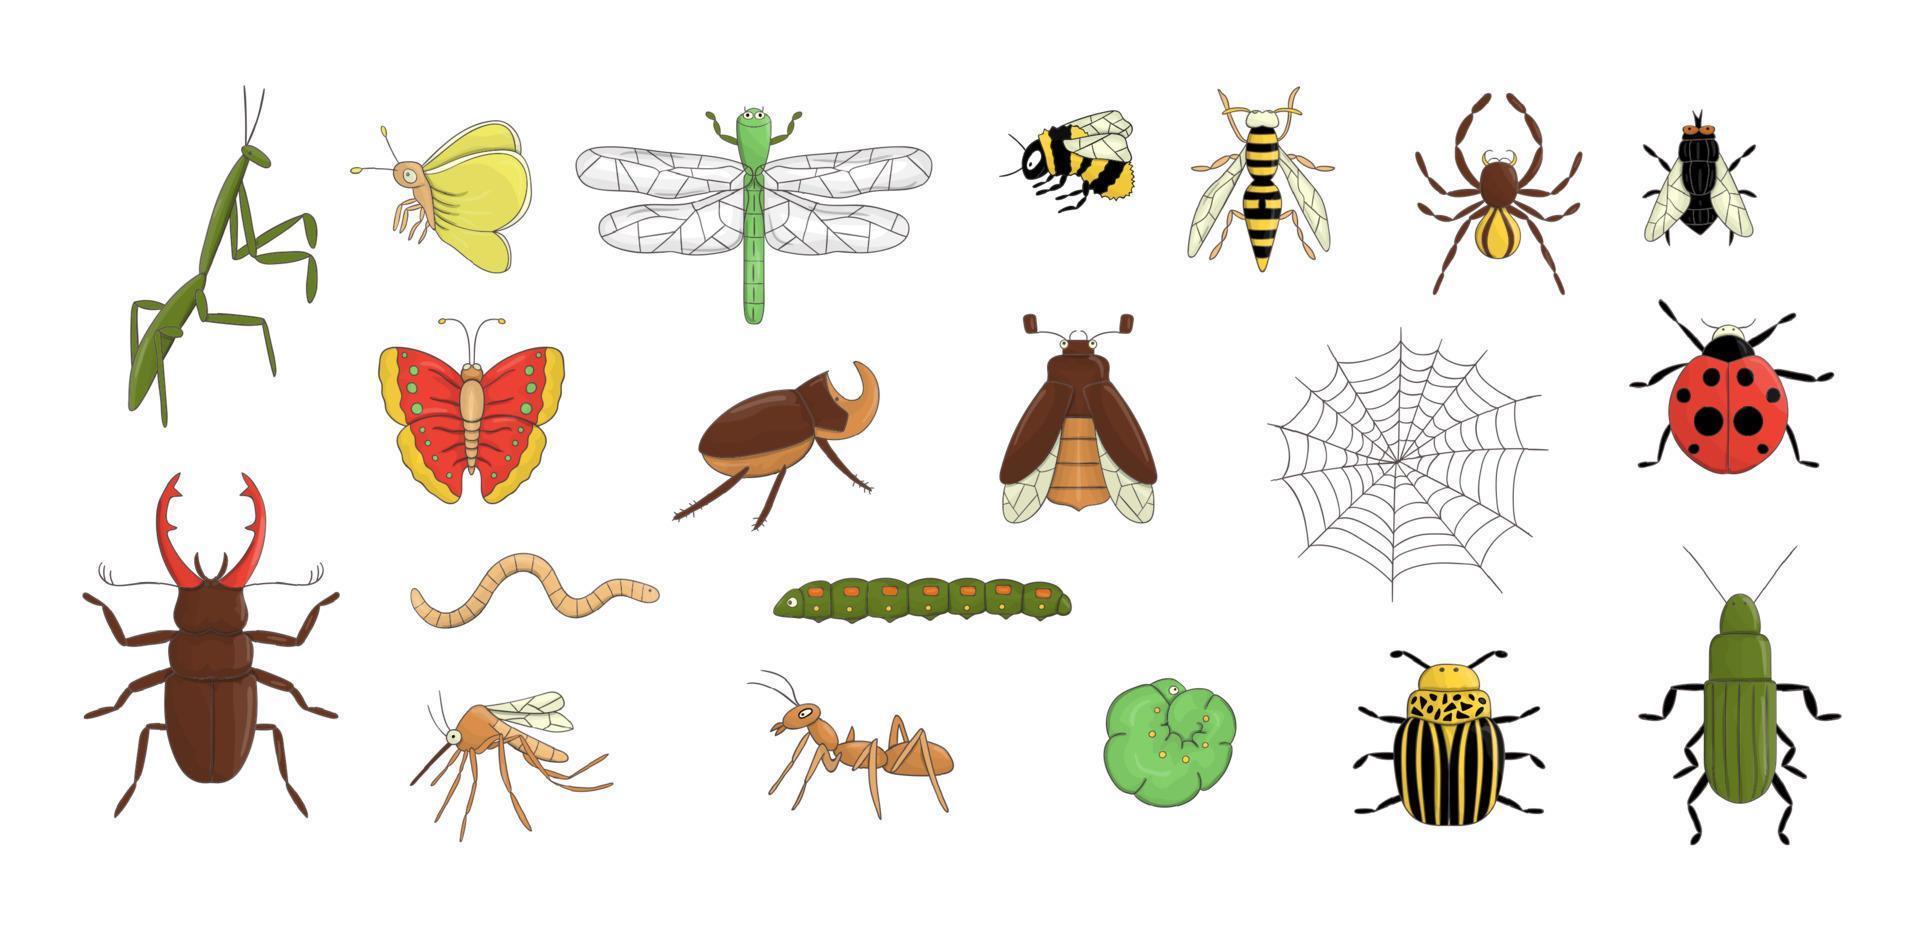 Vektor-Set von farbigen Insekten. Sammlung von isoliert auf weißem Hintergrund helle Biene, Hummel, Maikäfer, Fliege, Motte, Schmetterling, Raupe, Spinne, Marienkäfer, Käfer, Libelle, Wespe, Mücke, Wurm vektor